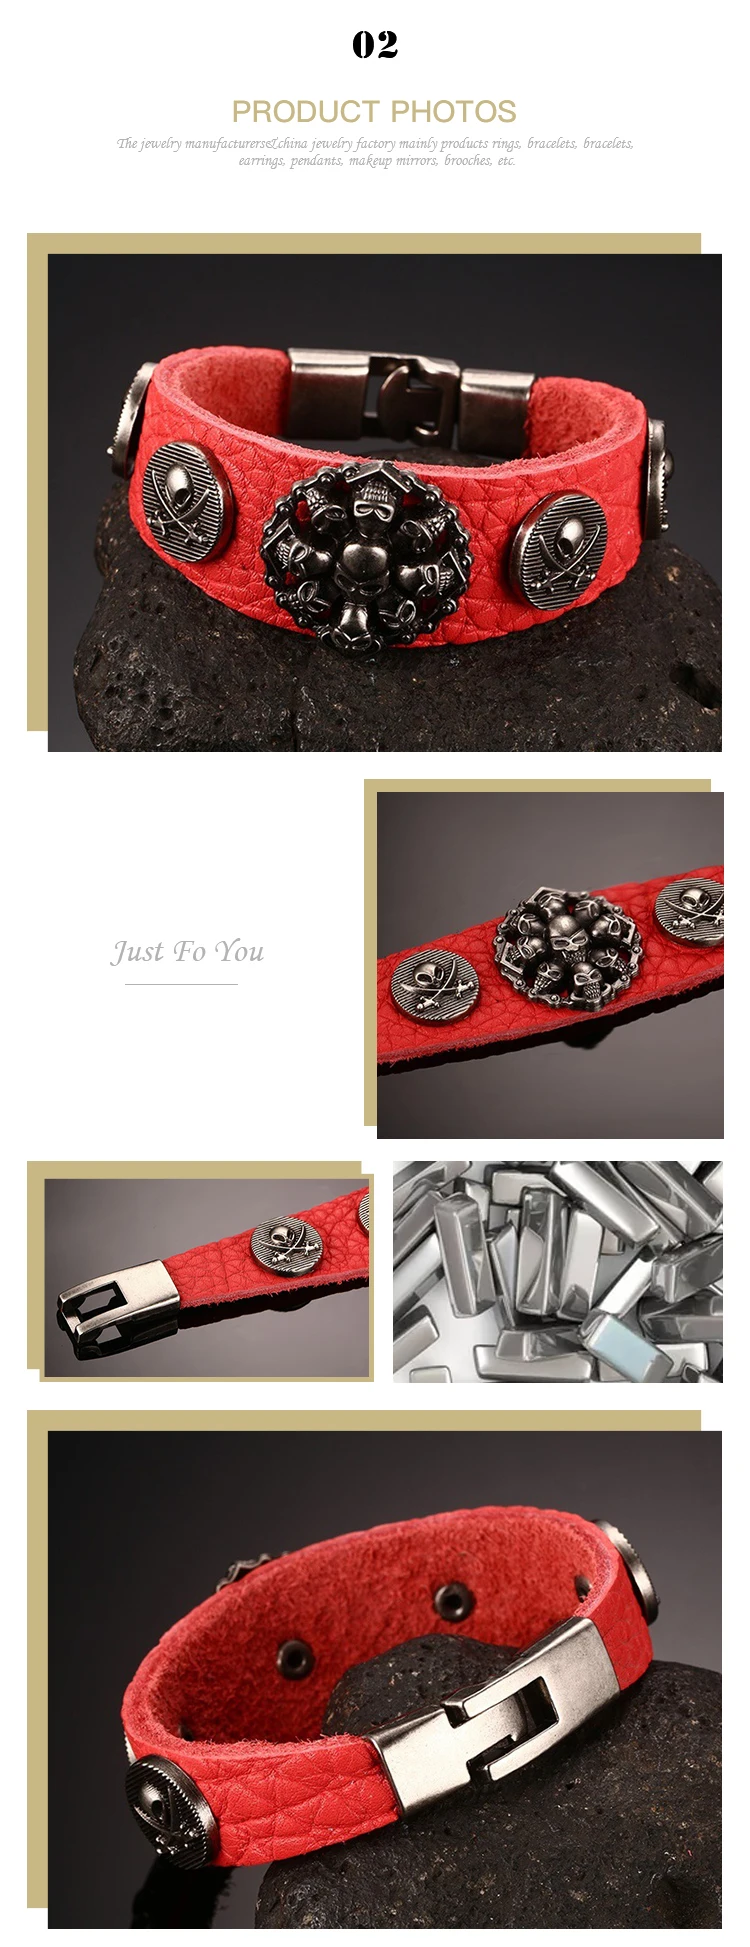 Spot wholesale alloy skull red leather men's bracelet BL-184